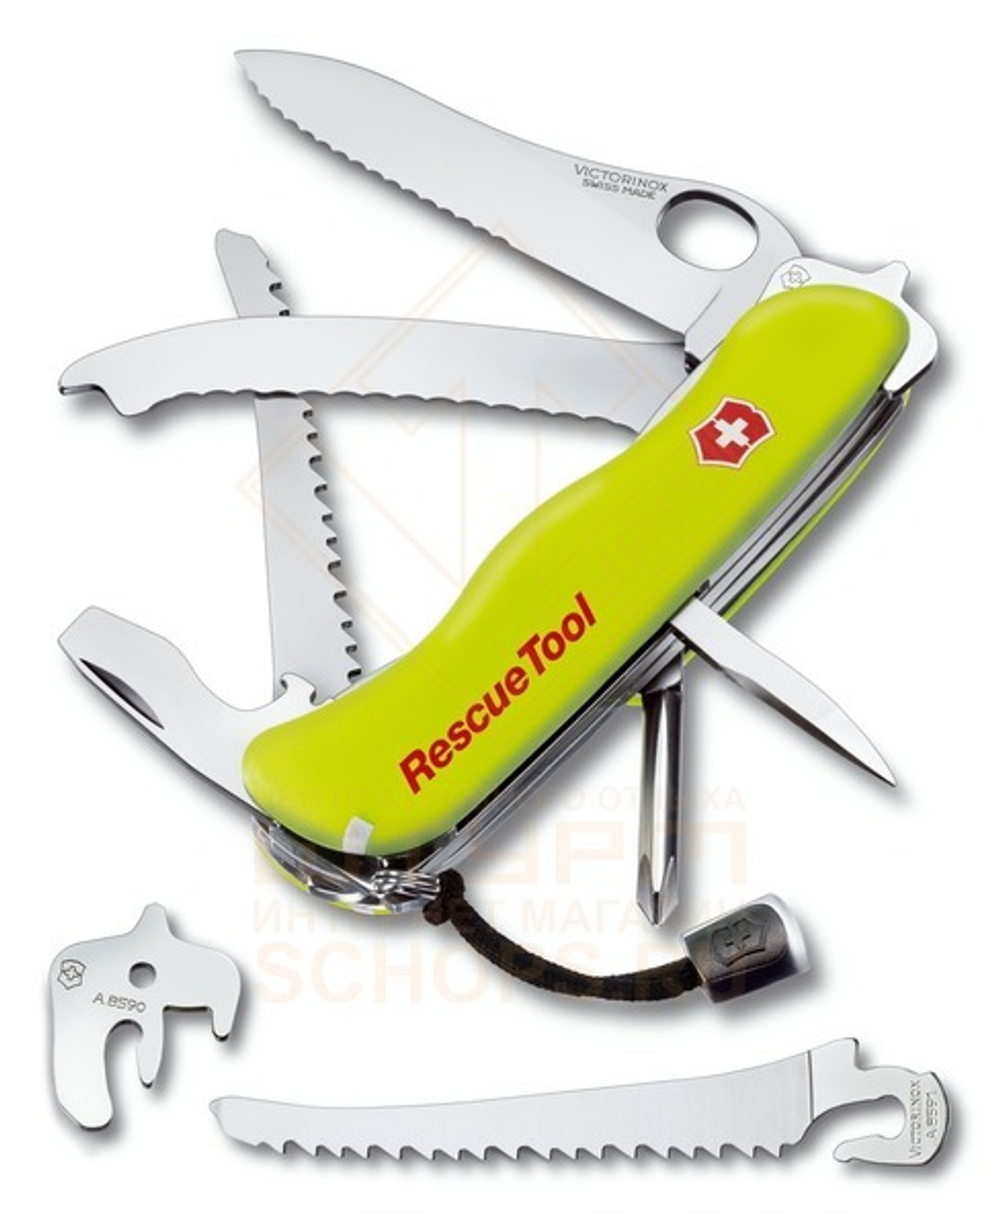 Нож многофункциональный Victorinox Rescue Tool 111 мм, Yellow